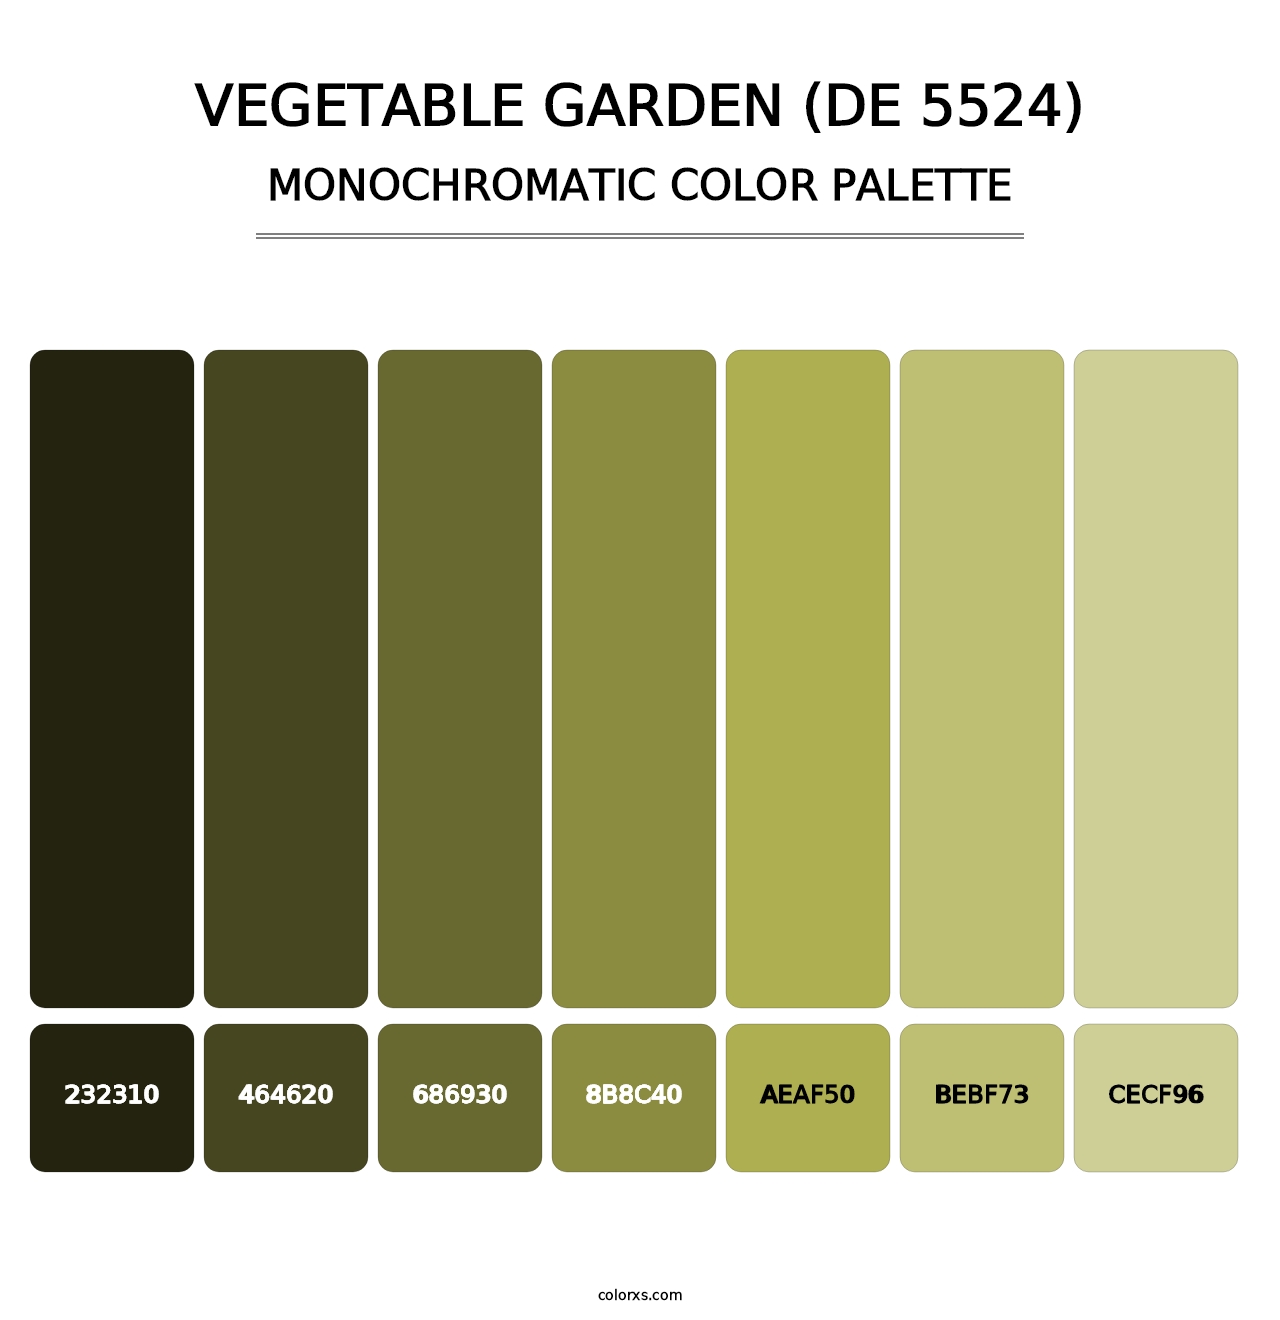 Vegetable Garden (DE 5524) - Monochromatic Color Palette